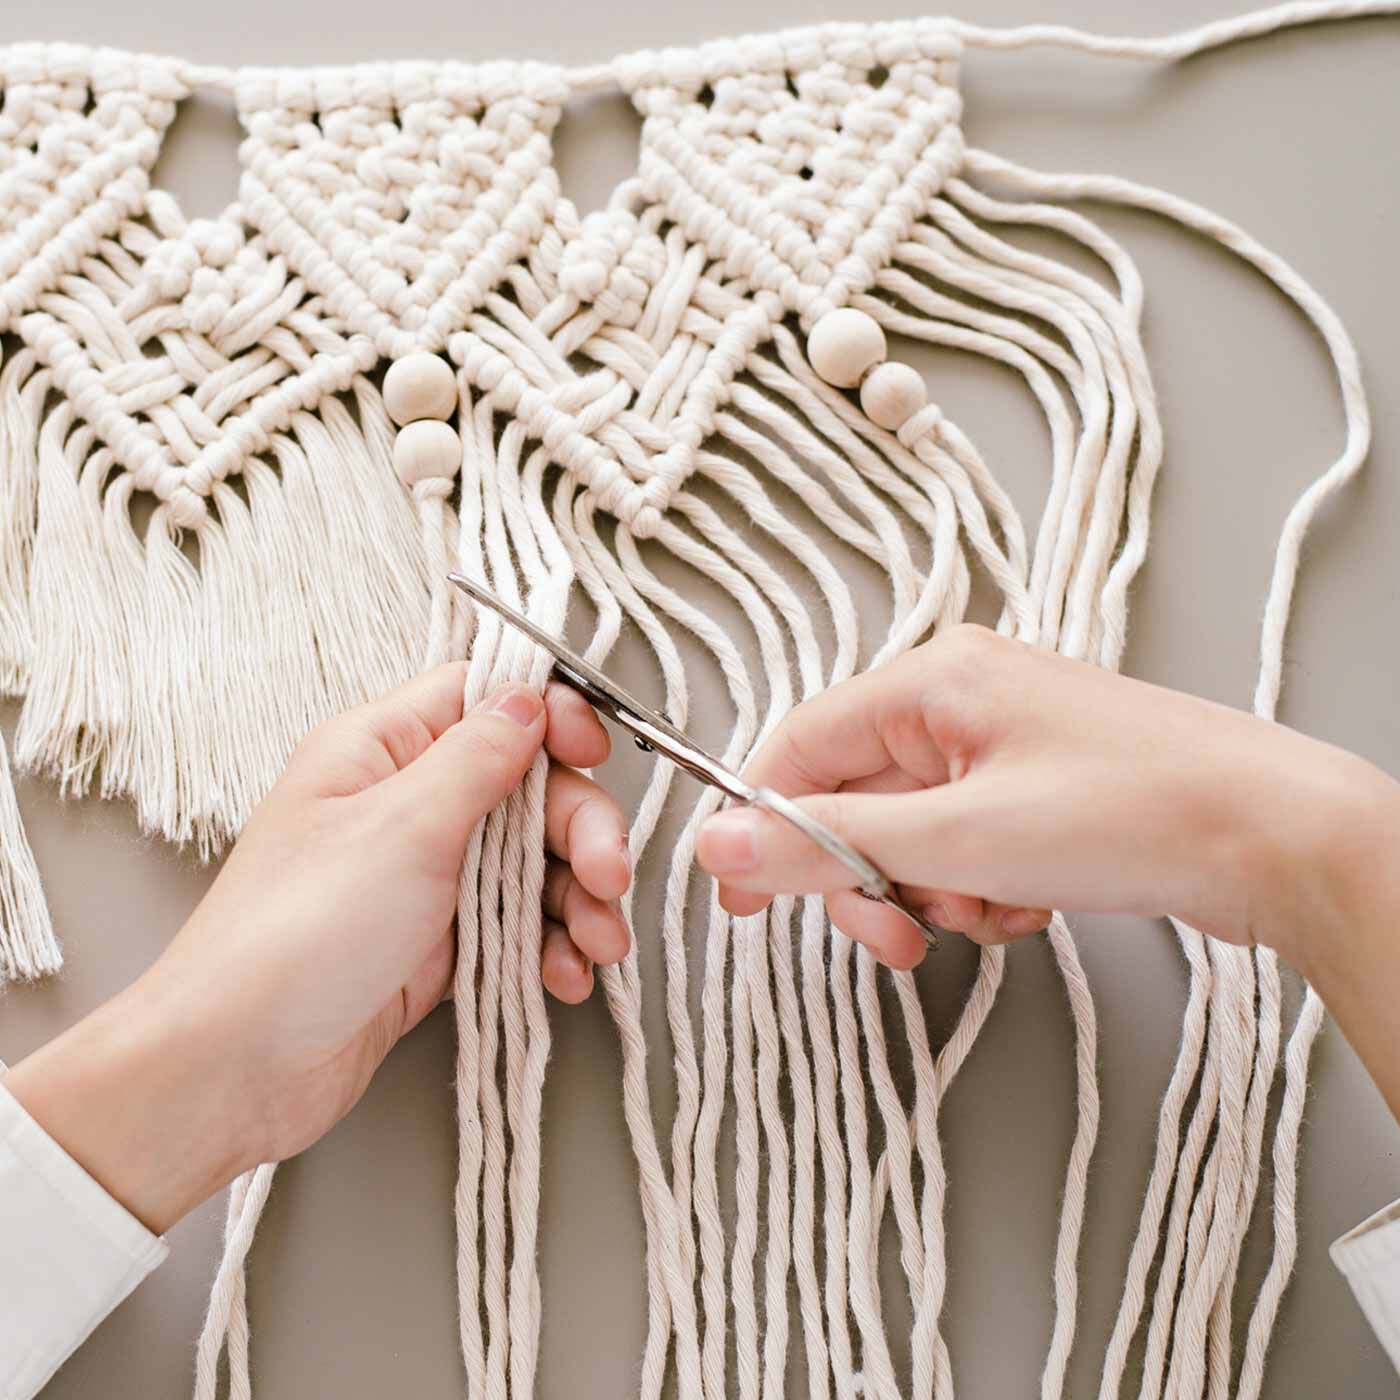 Real Stock|やわらかい甘撚（よ）り糸で作る マクラメガーランドキット|2）飾る場所に合わせてお好みでカット。くしで糸をとかして整えます。